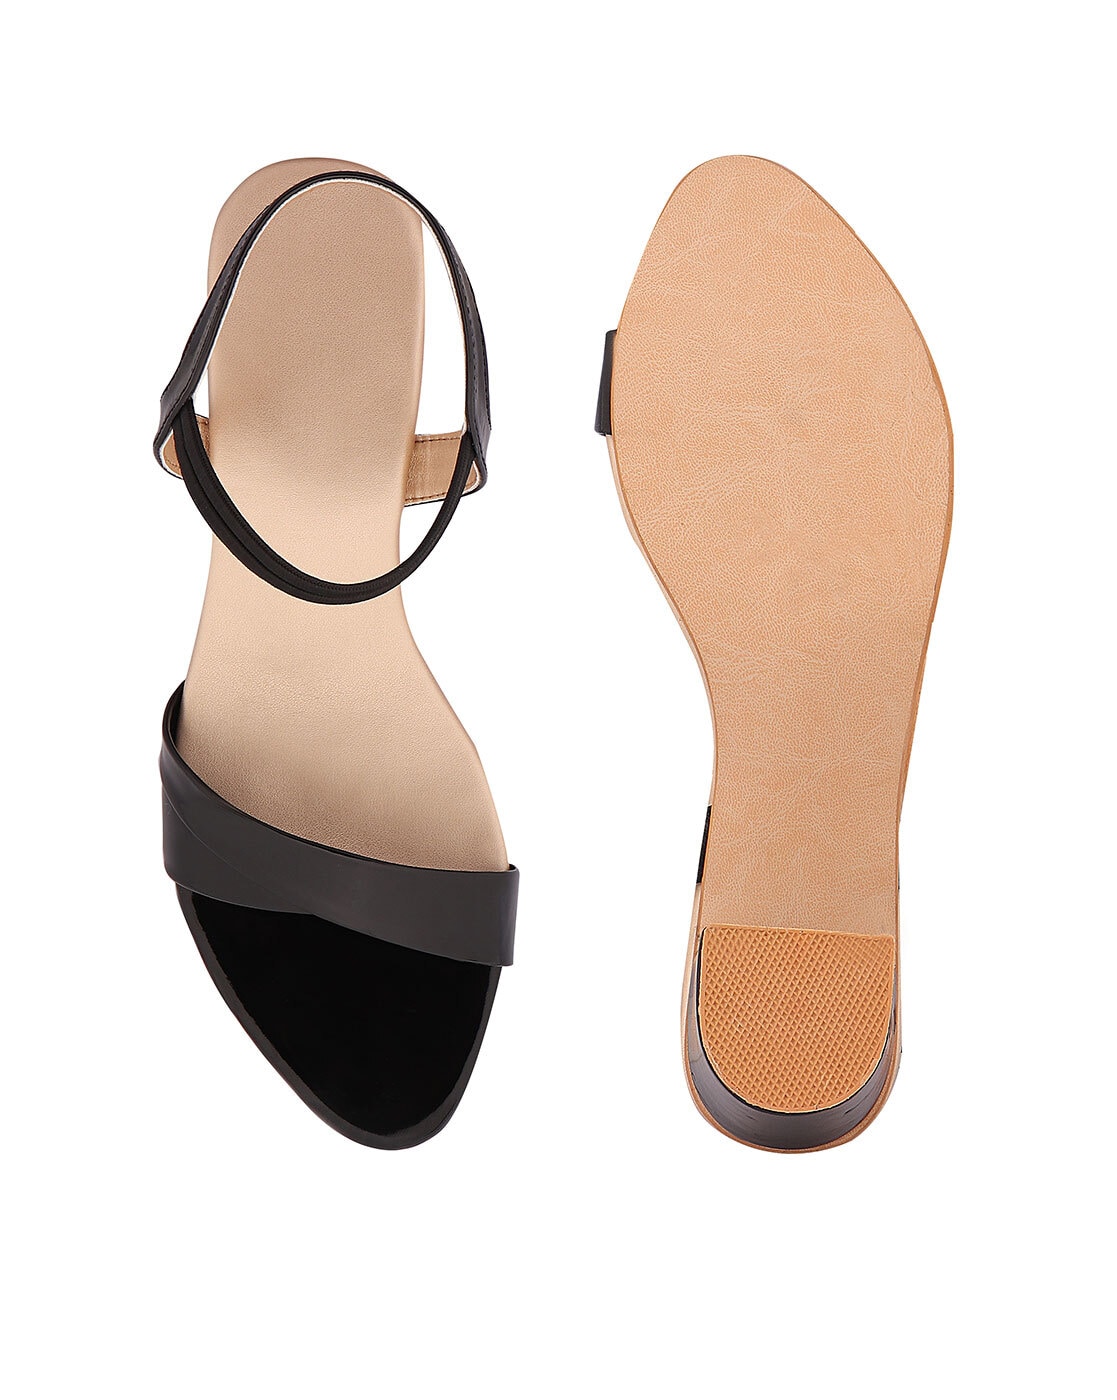 Heels & Wedges | Brand New Transparent black block heels.Brand -Shoetopia |  Freeup